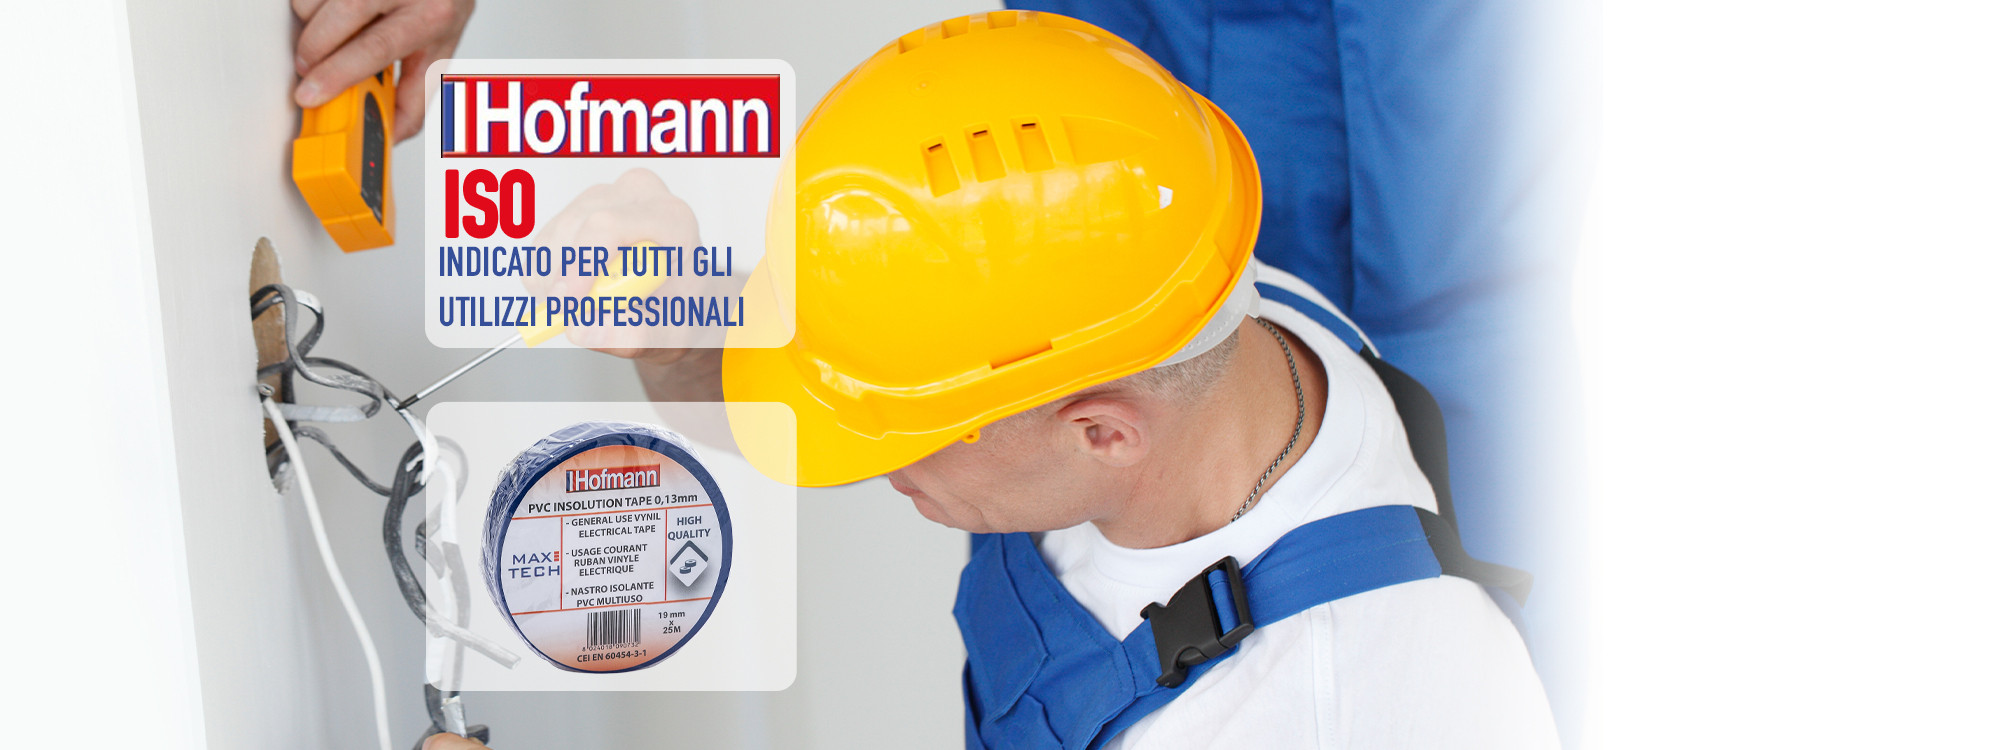 Hofmann ISO, indicato per tutti gli utilizzi professionali